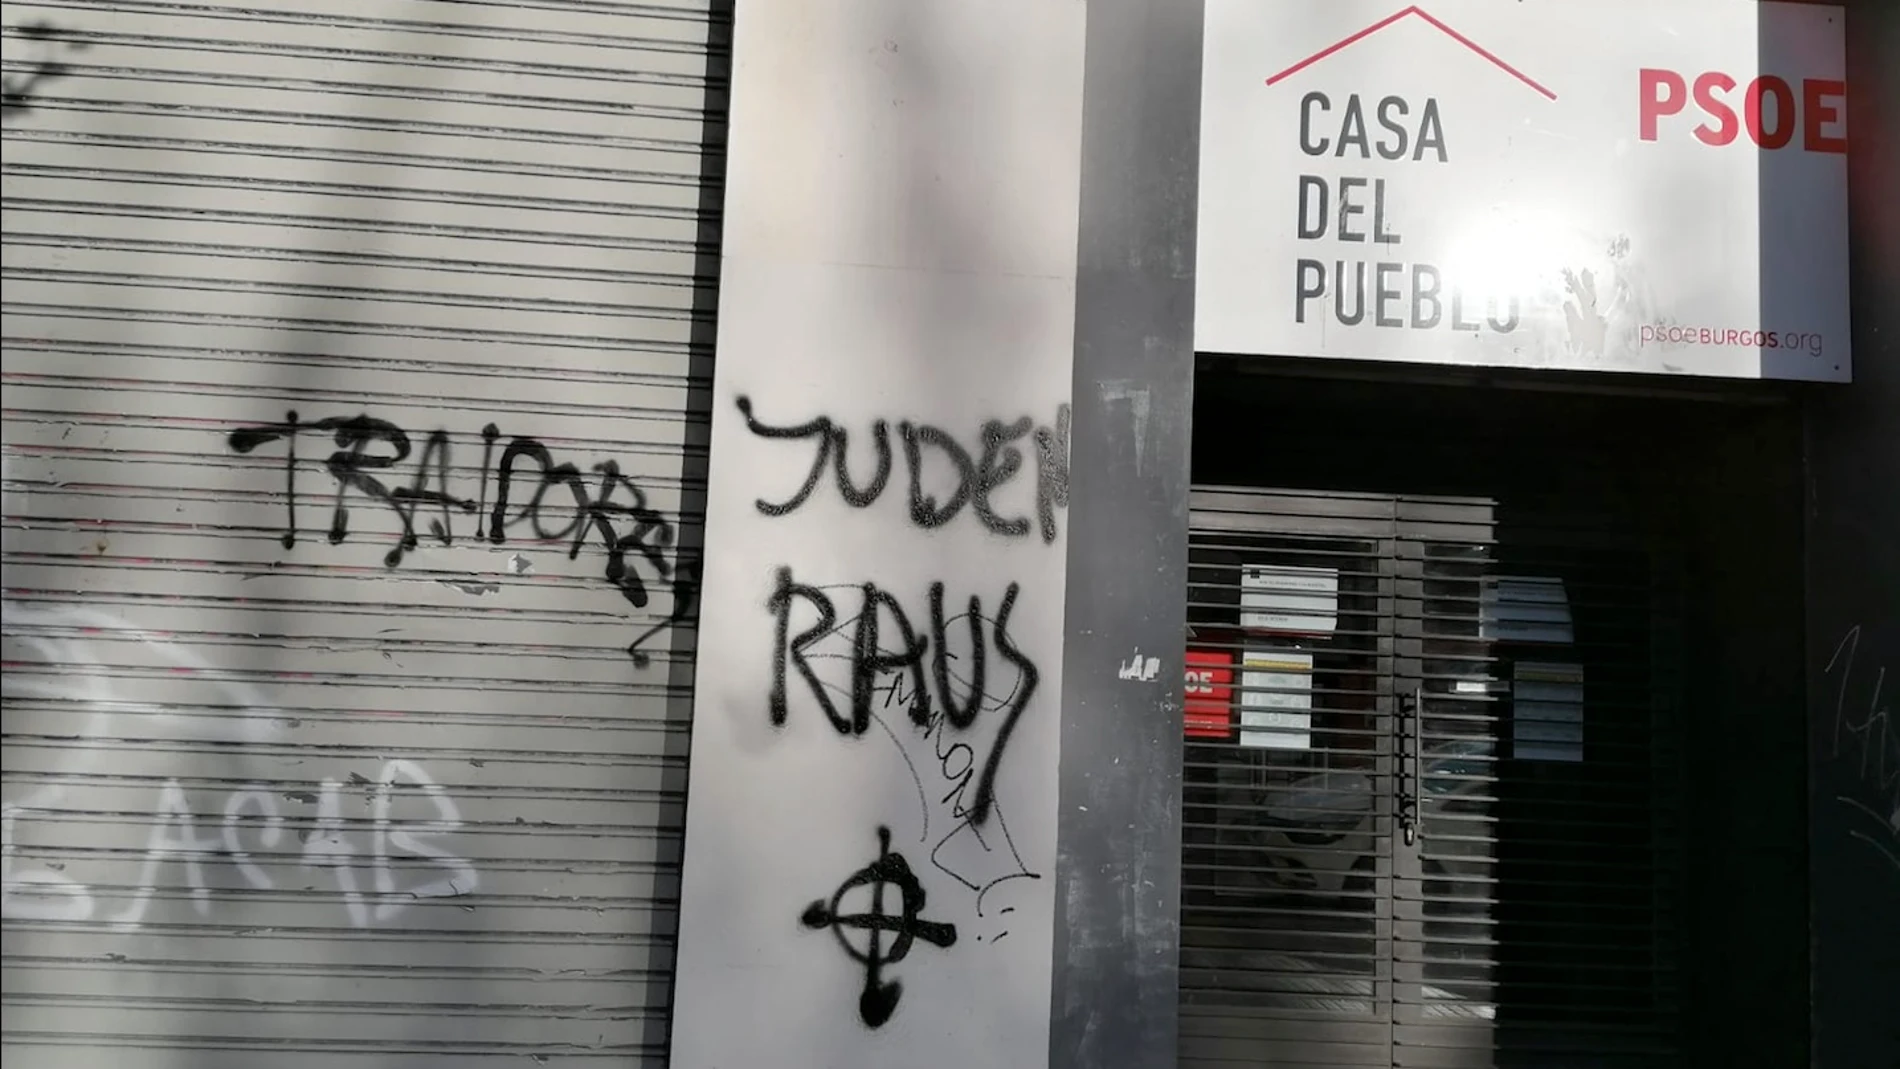 Pintadas aparecidas en la sede del PSOE en Burgos capital